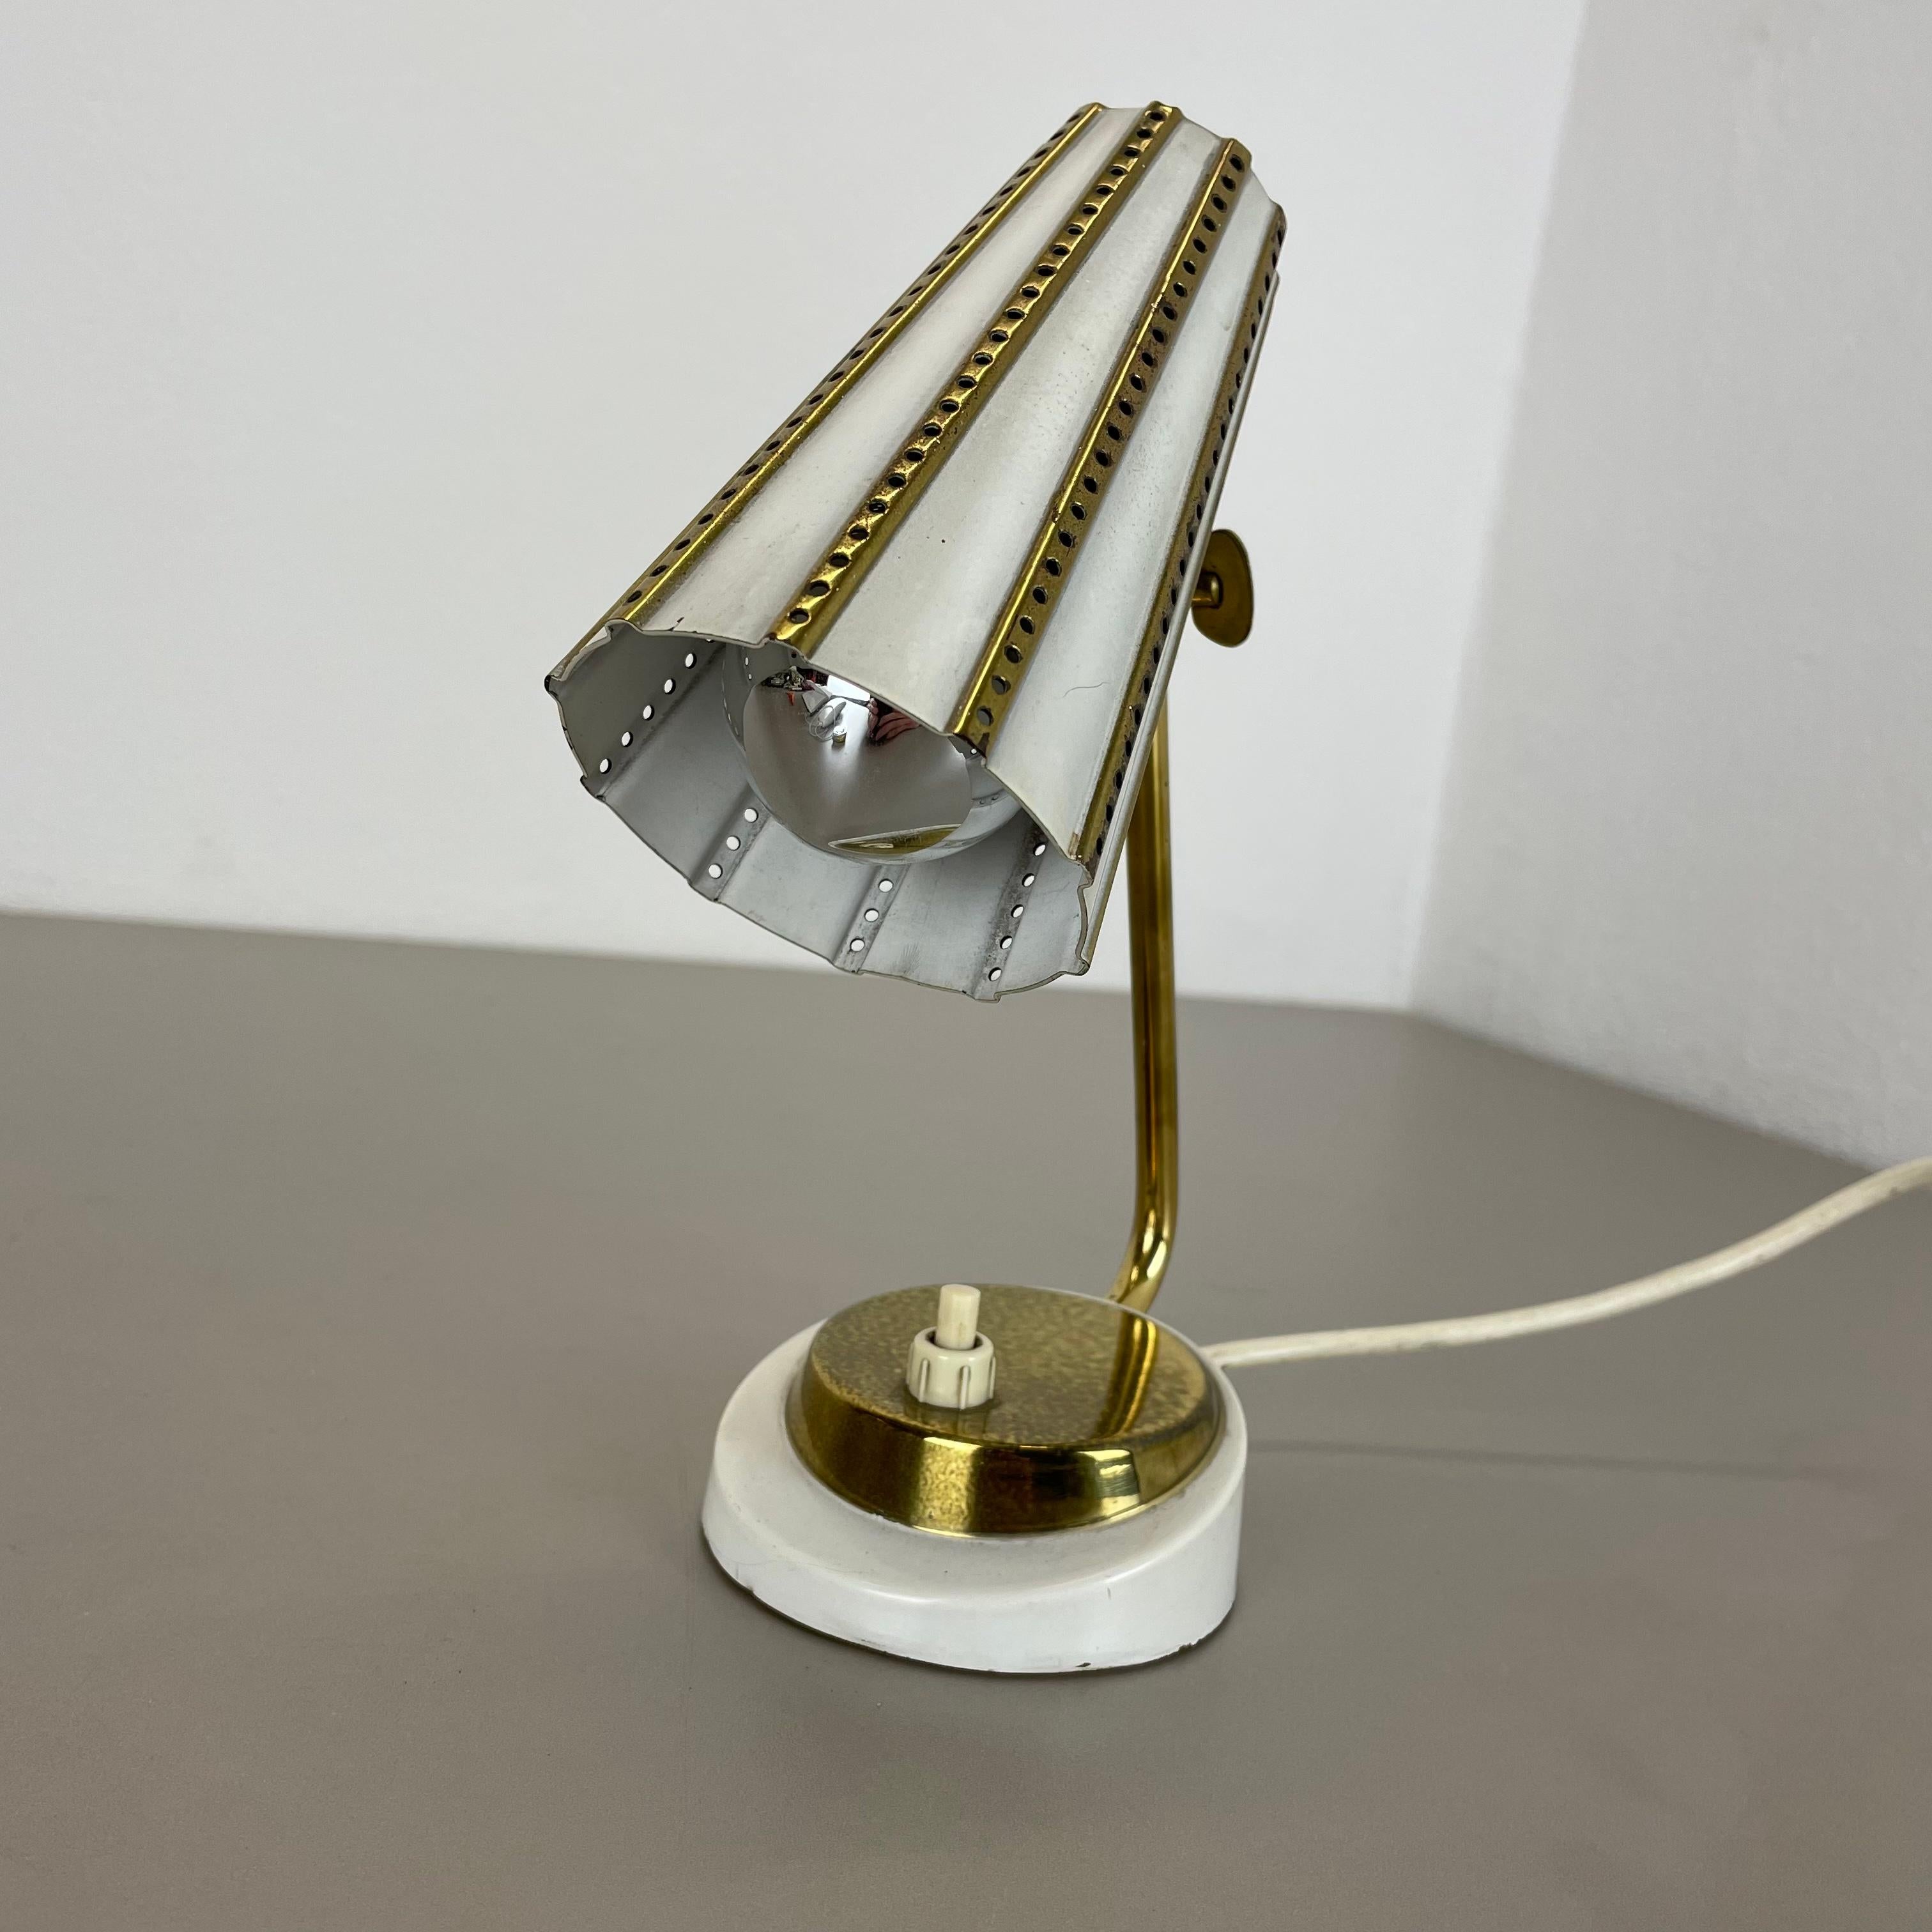 Article :

Lampe de table moderniste dans le style du Design/One de Stilnovo


Origine :

Italie


Décennie :

1950s





Cette lampe vintage originale a été conçue et produite dans les années 1950 en Italie. La lampe est fabriquée en métal et en